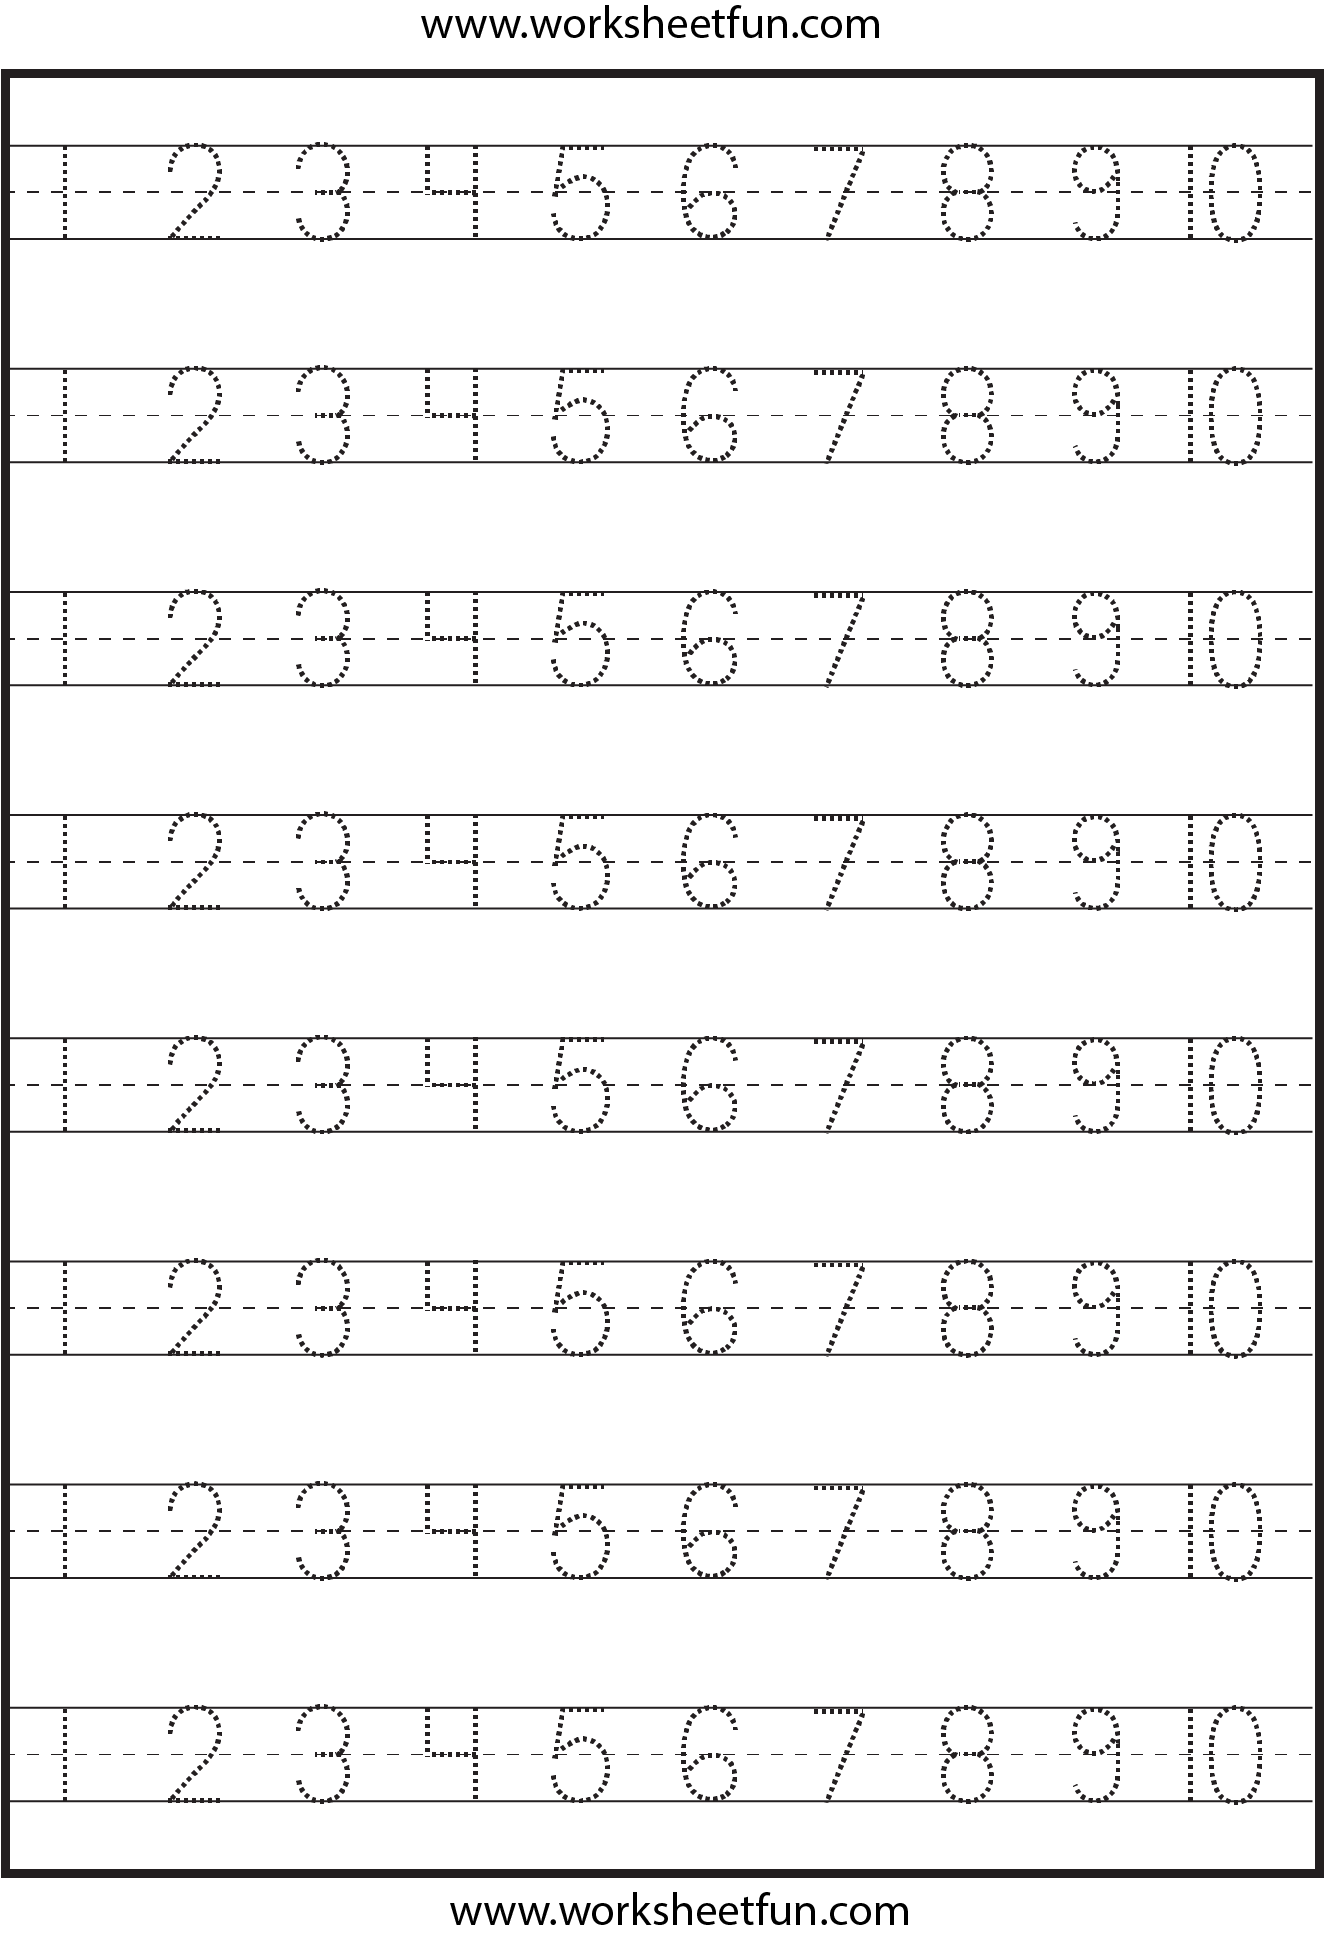 Number Tracing 1 10 Worksheet Free Preschool Worksheets Numbers